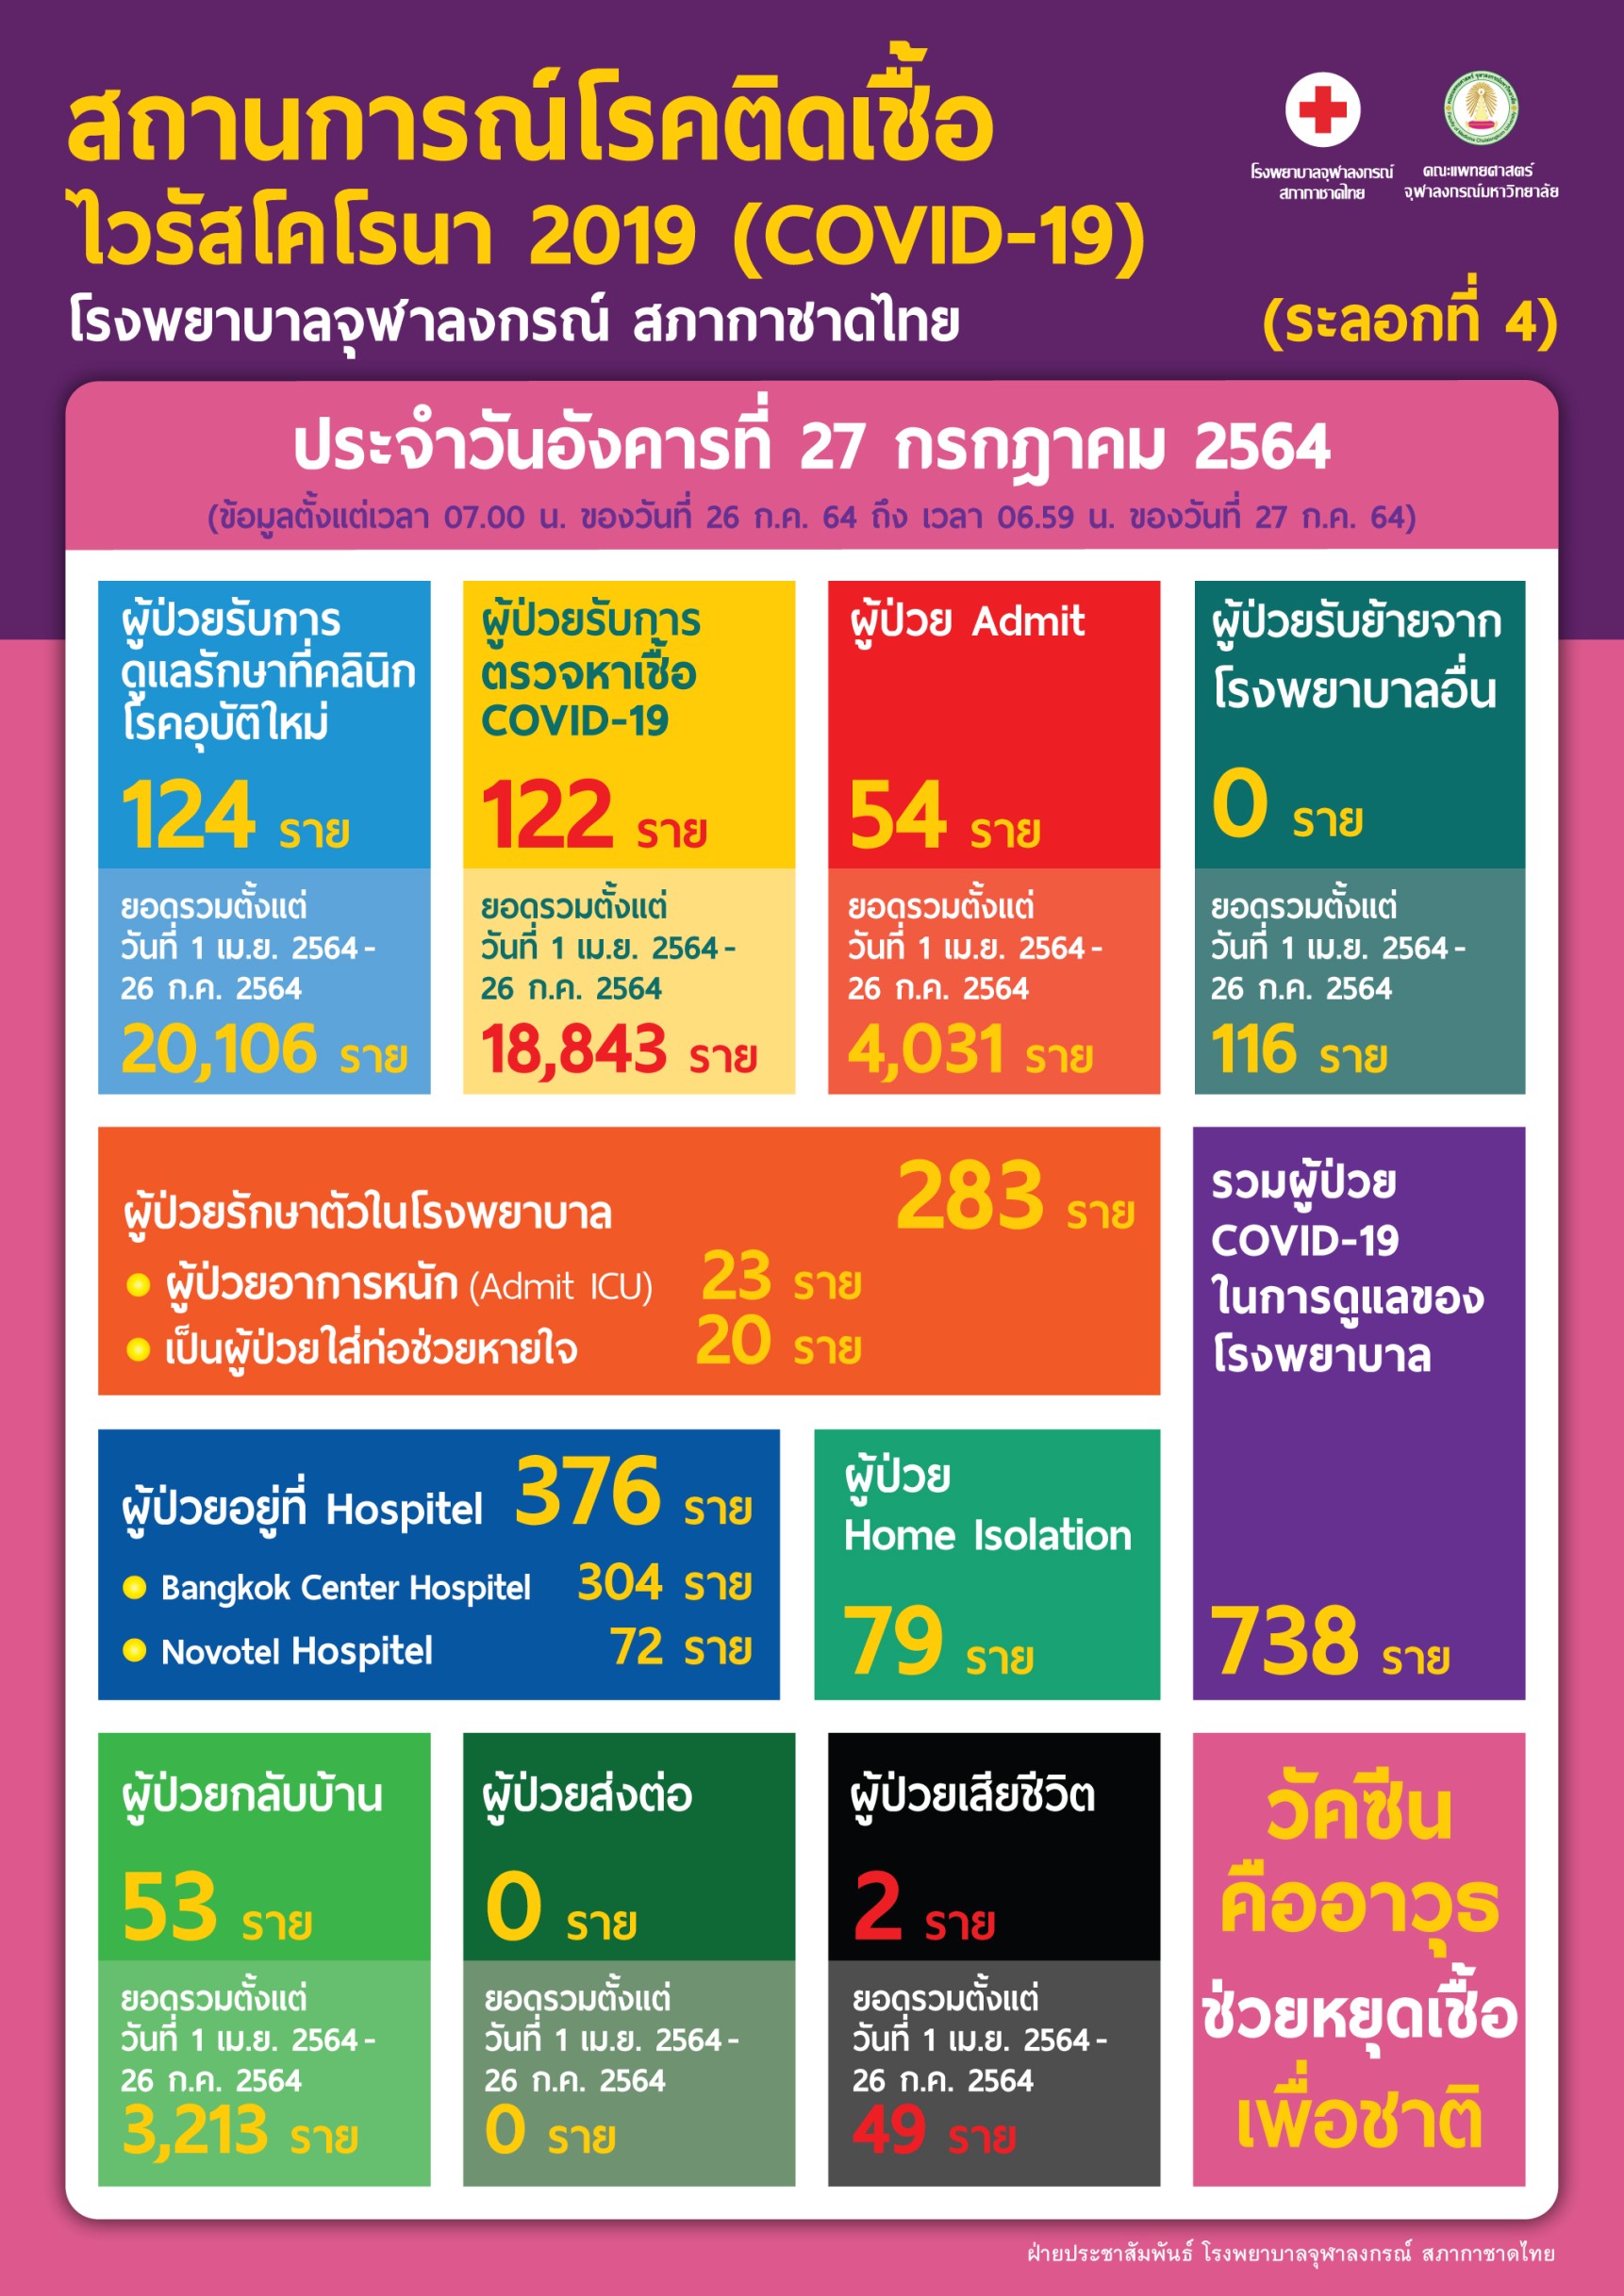 สถานการณ์โรคติดเชื้อไวรัสโคโรนา 2019 (COVID-19) (ระลอกที่ 4)โรงพยาบาลจุฬาลงกรณ์ สภากาชาดไทย ประจำวันอังคารที่ 27 กรกฎาคม 2564